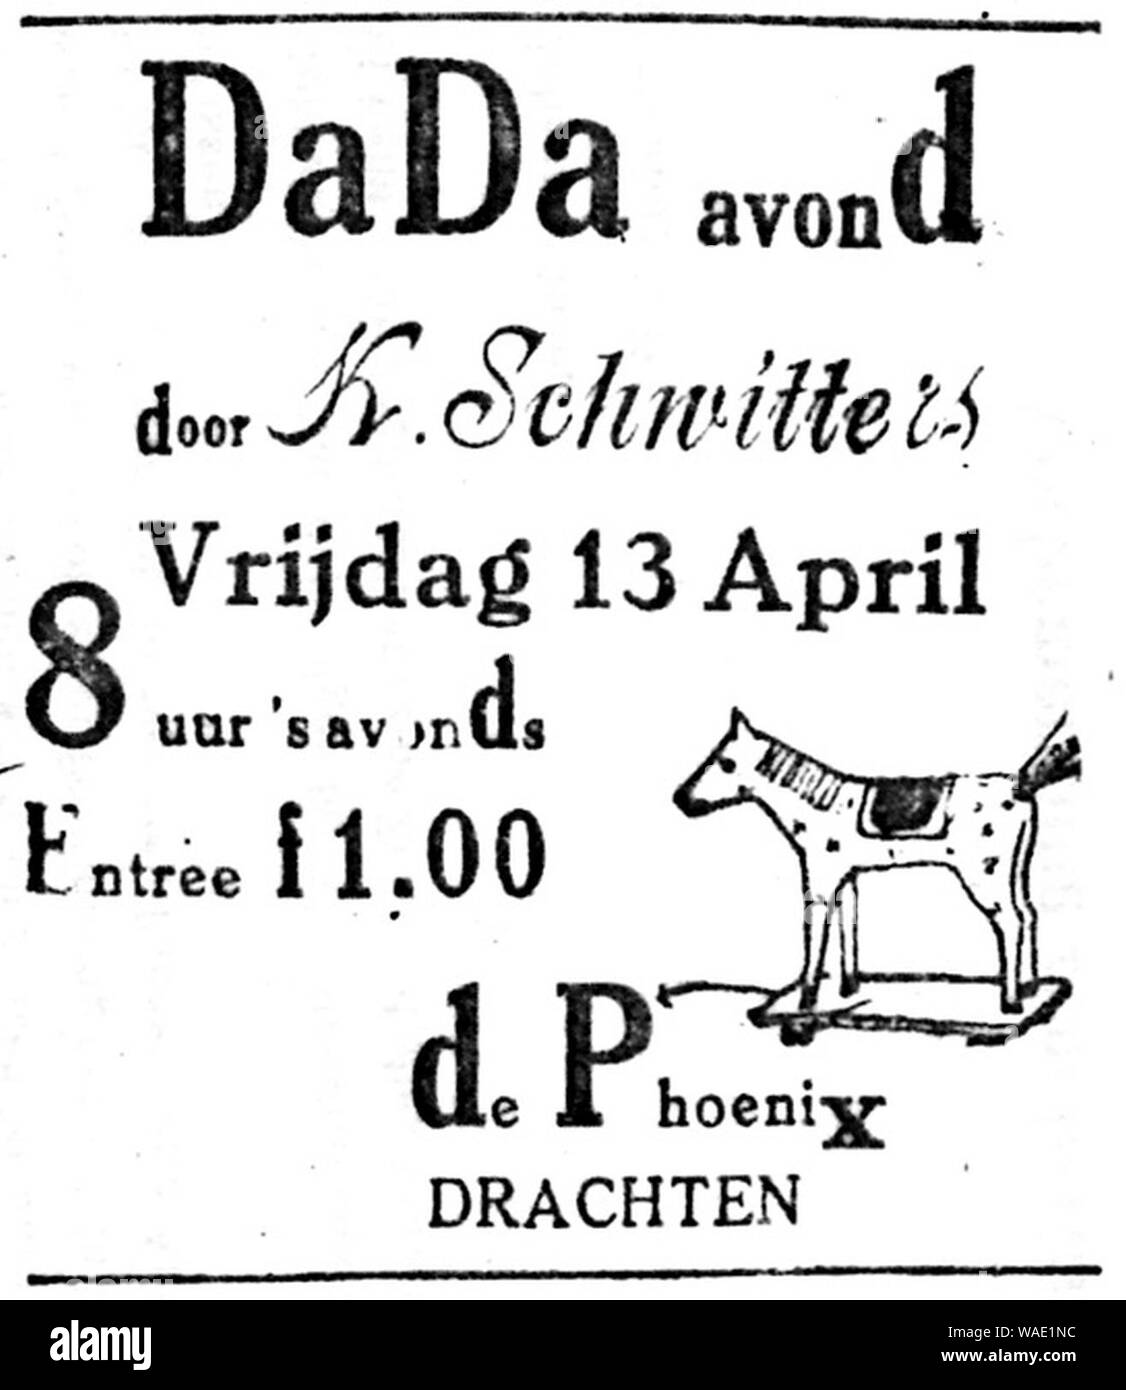 Dragtster Courant 1923-04-13 advertisement Dada avond door K. Schwitters in De Phoenix in Drachten. Stock Photo